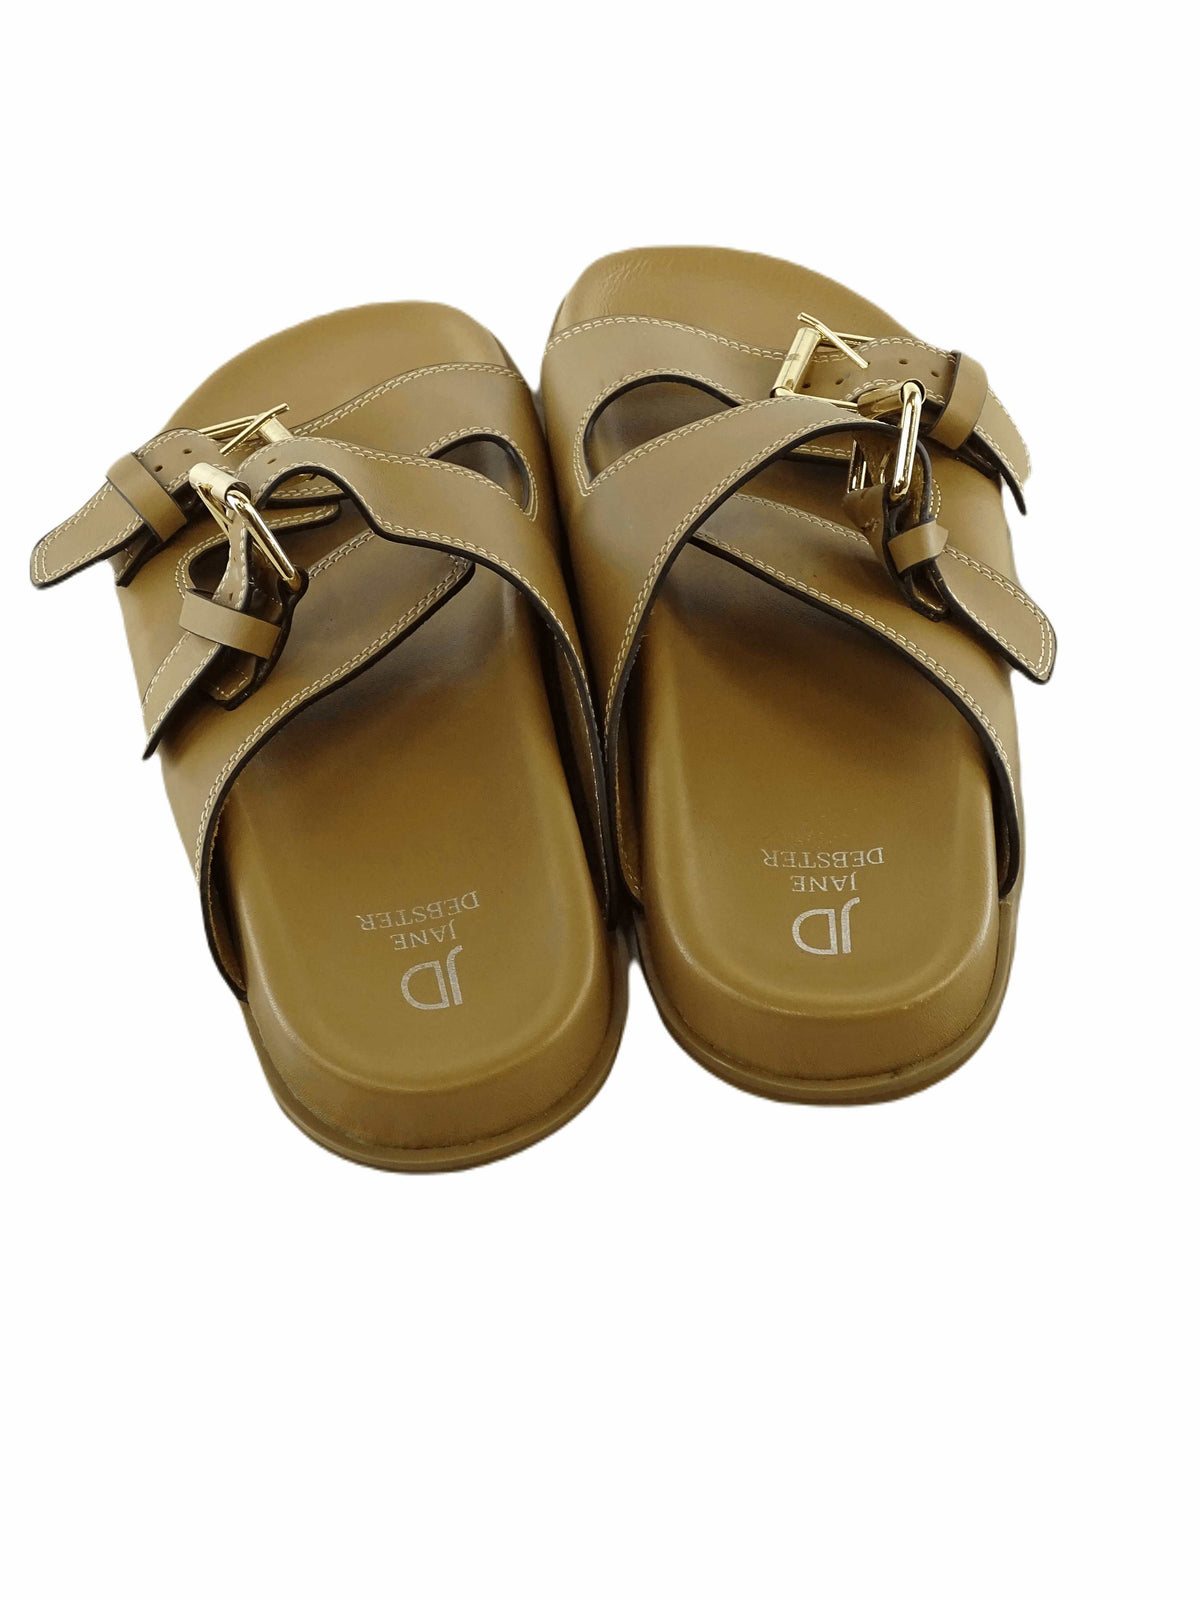 Jane Webster Tan Leather Sandals AU/US 7 (EU 38)